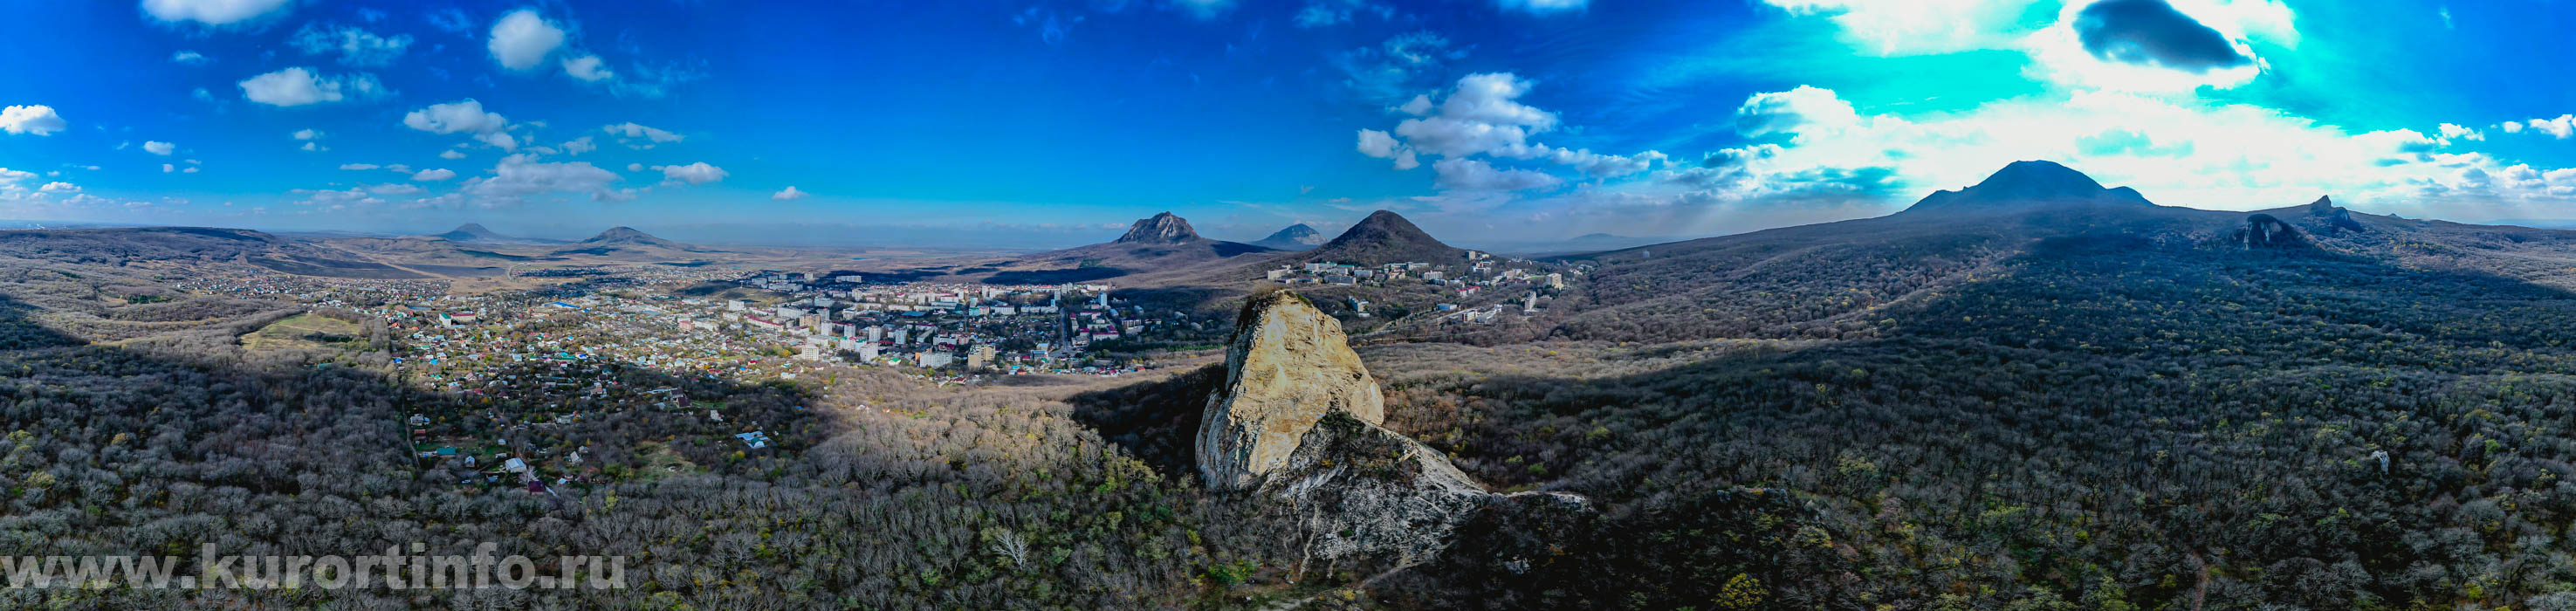 Фото панорама Железноводска от горы Медовая осенью